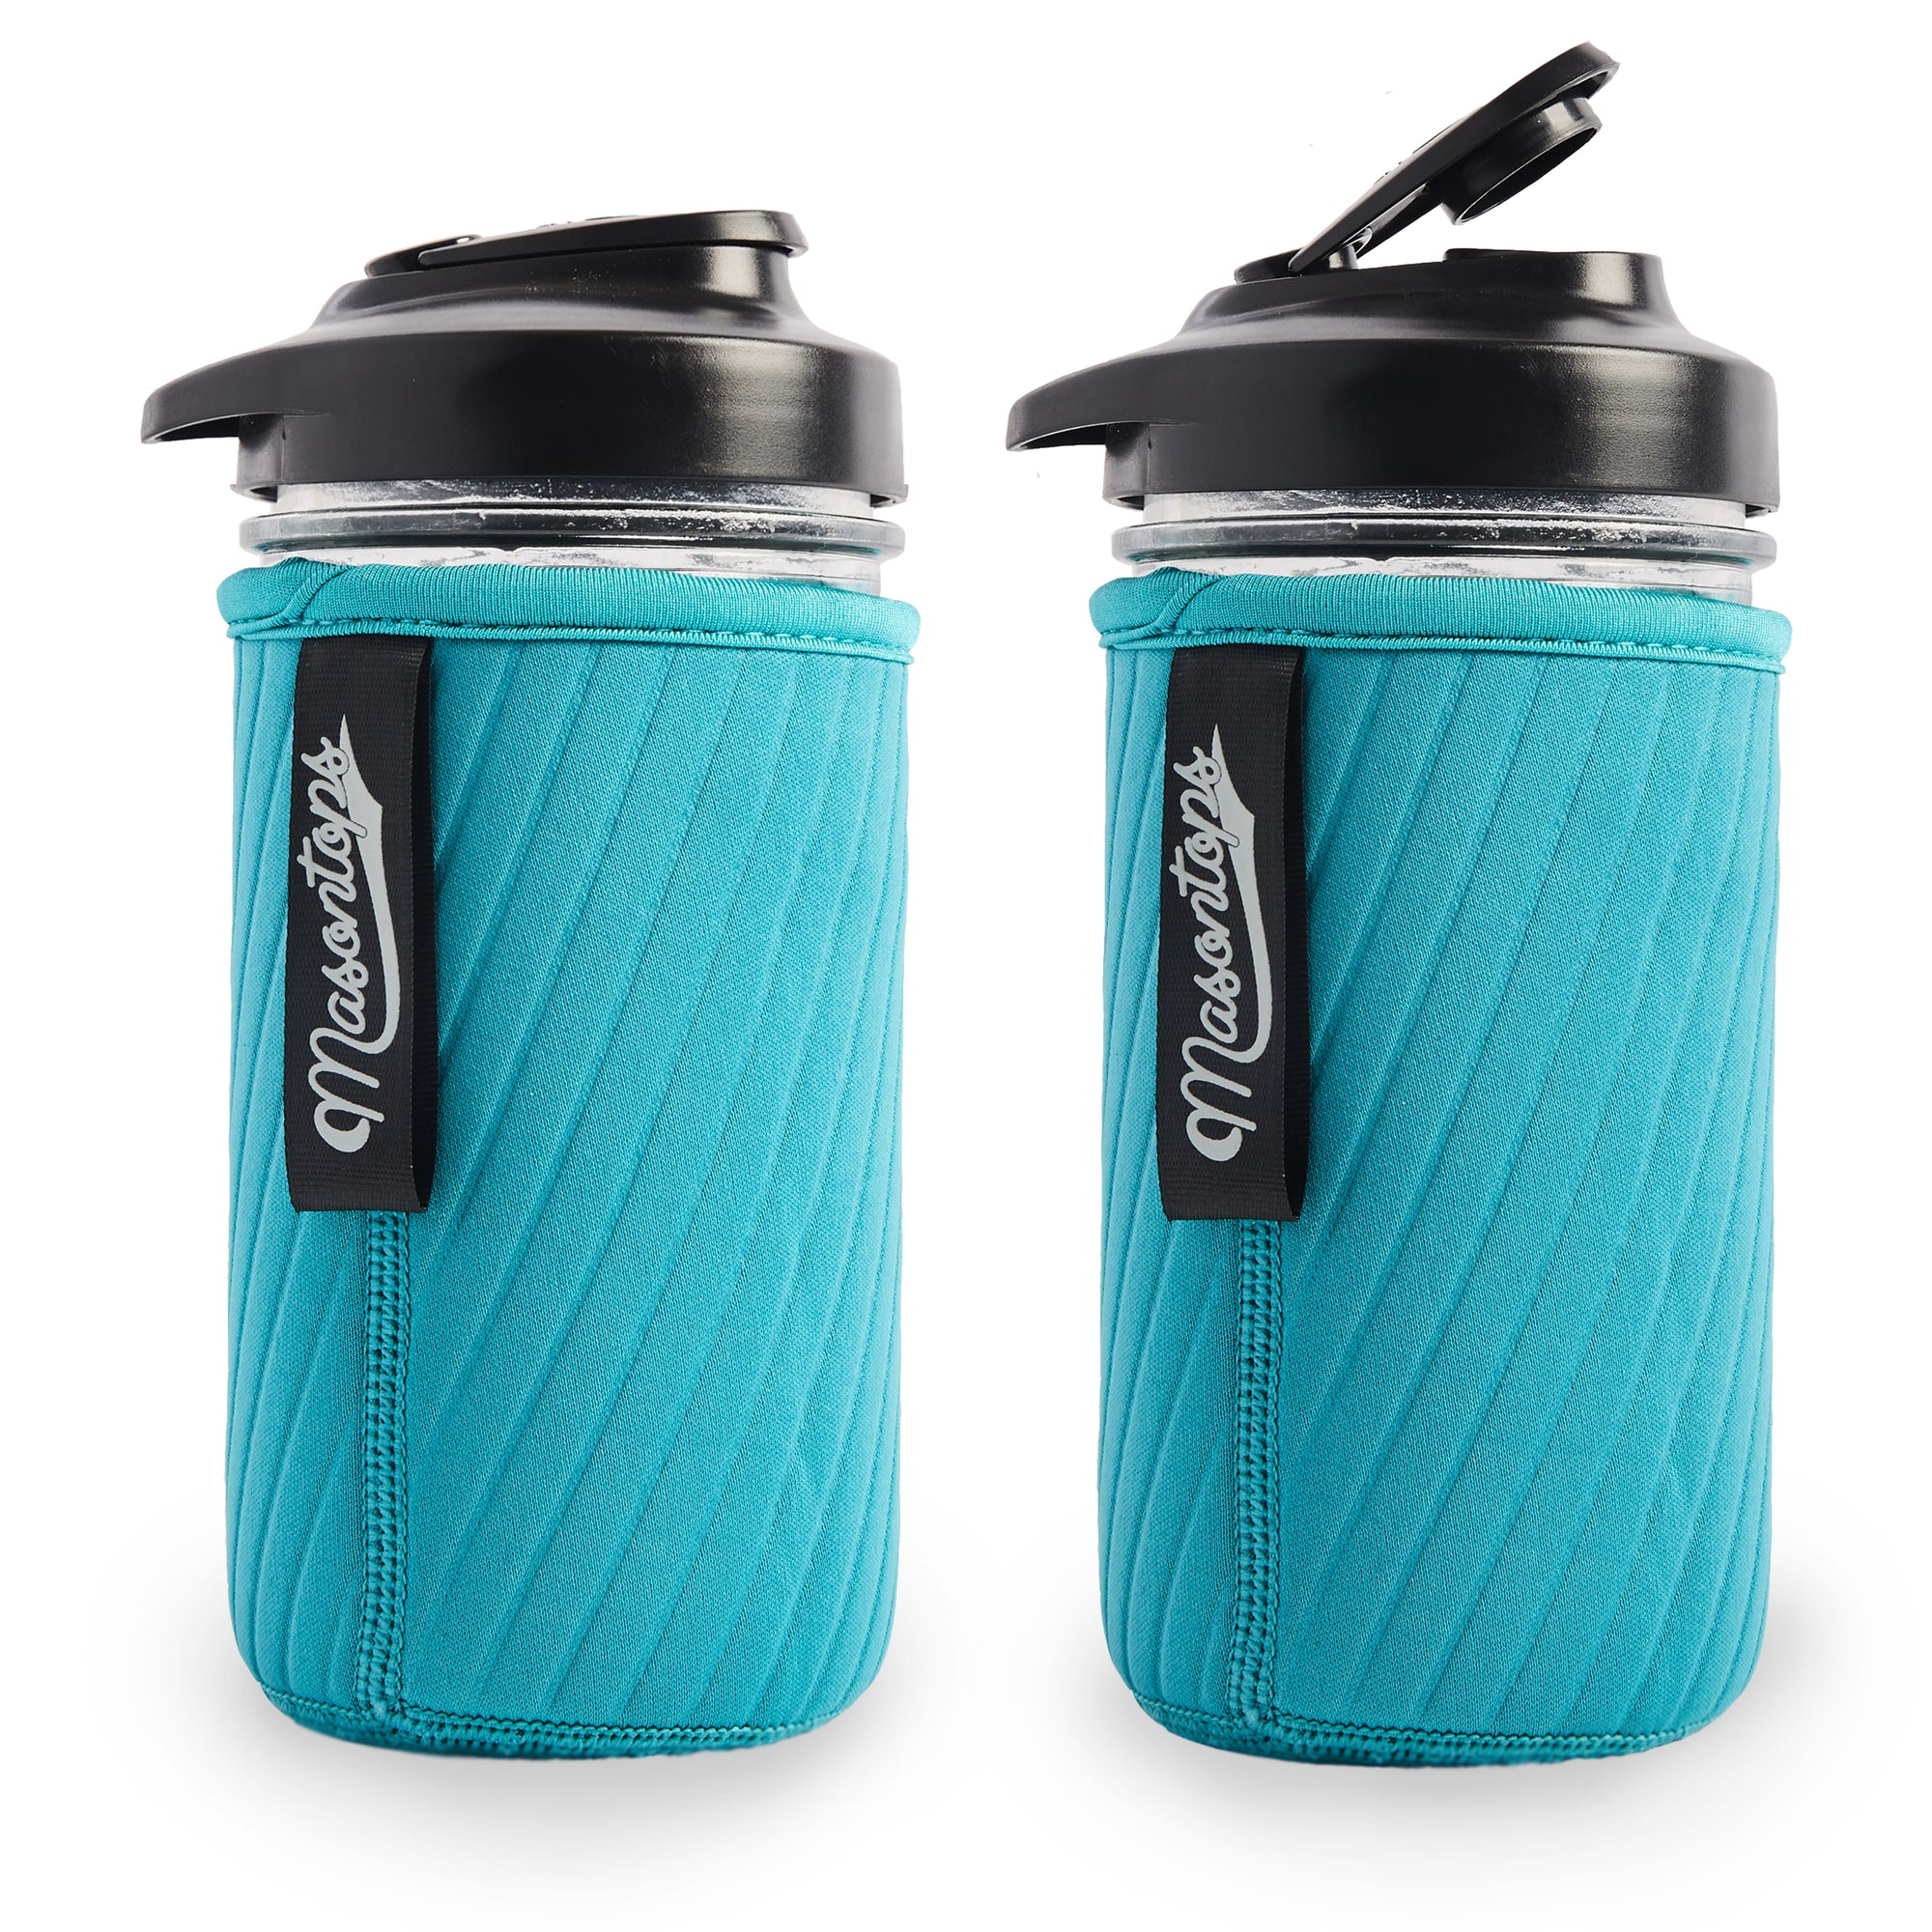 Masontops 3 PC Mason Jar Water Bottle Set - 1 X 16 oz Regular Mouth Jar - 1  Turquoise Insulator Sleeve - 1 Turquoise Drinking Lid